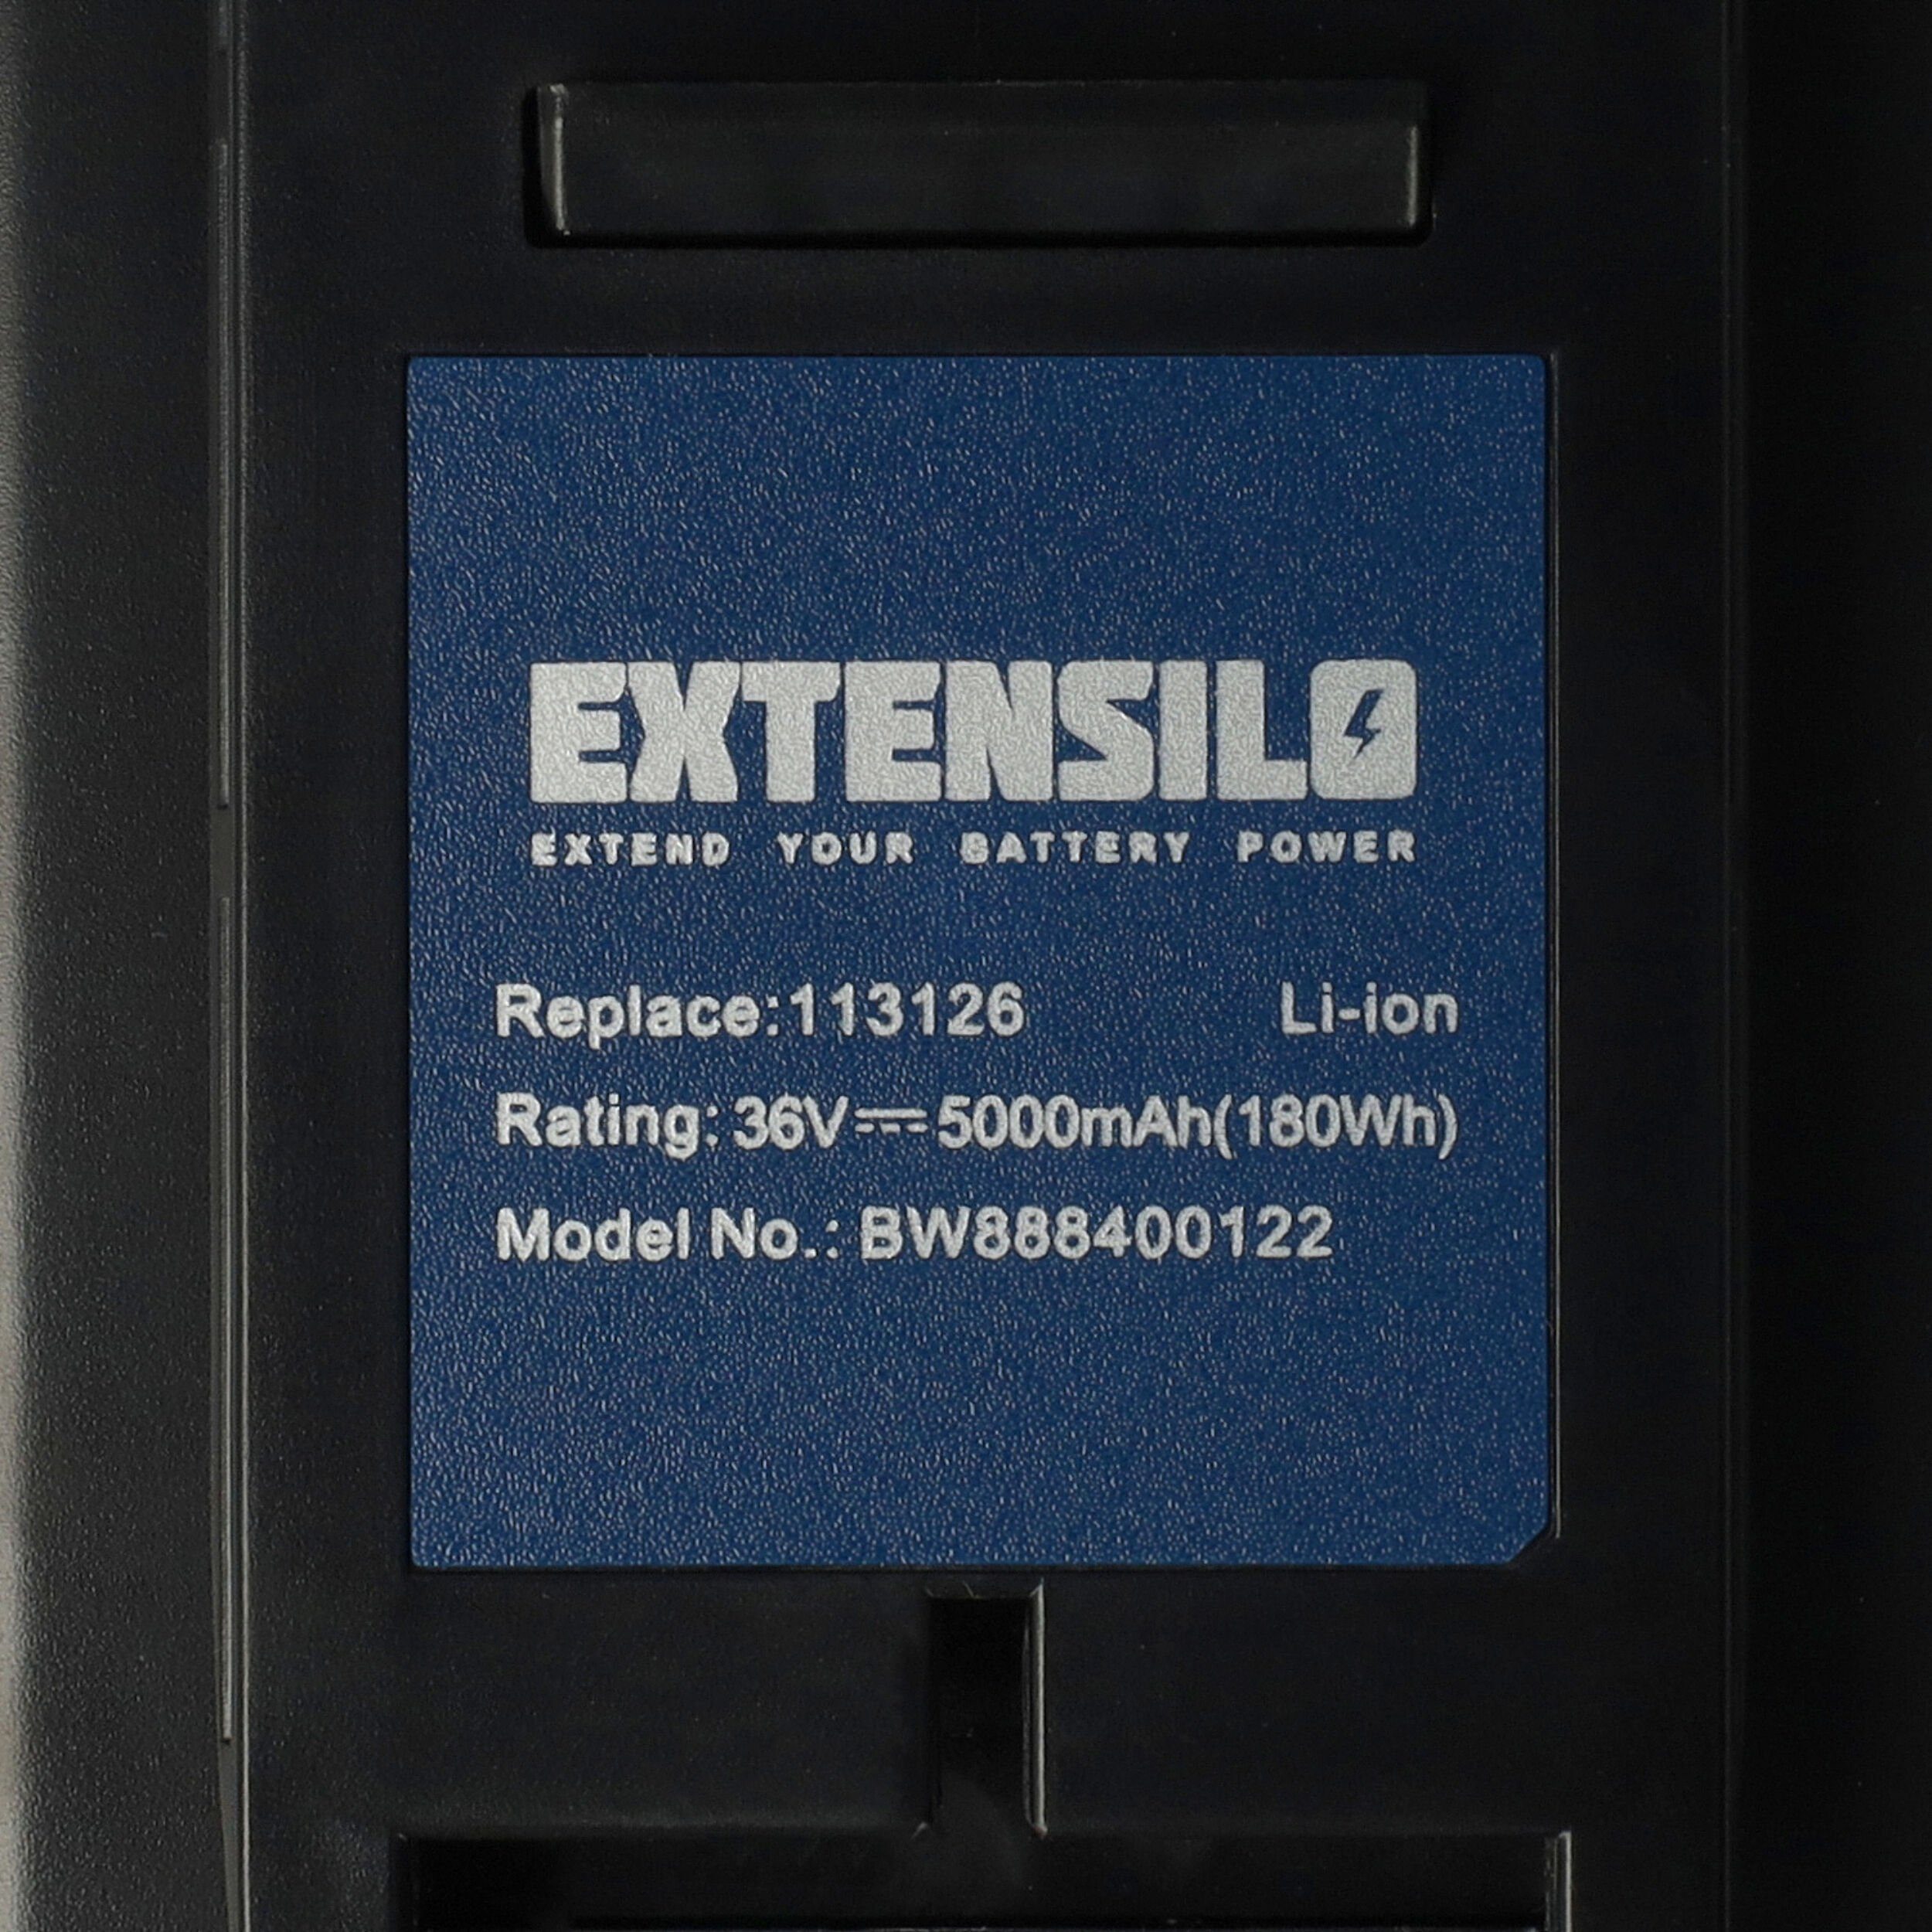 Extensilo kompatibel mit Li, mAh GT HT AL-KO 5000 4030 Akku 4055, Li-Ion (36 V) 36 HT